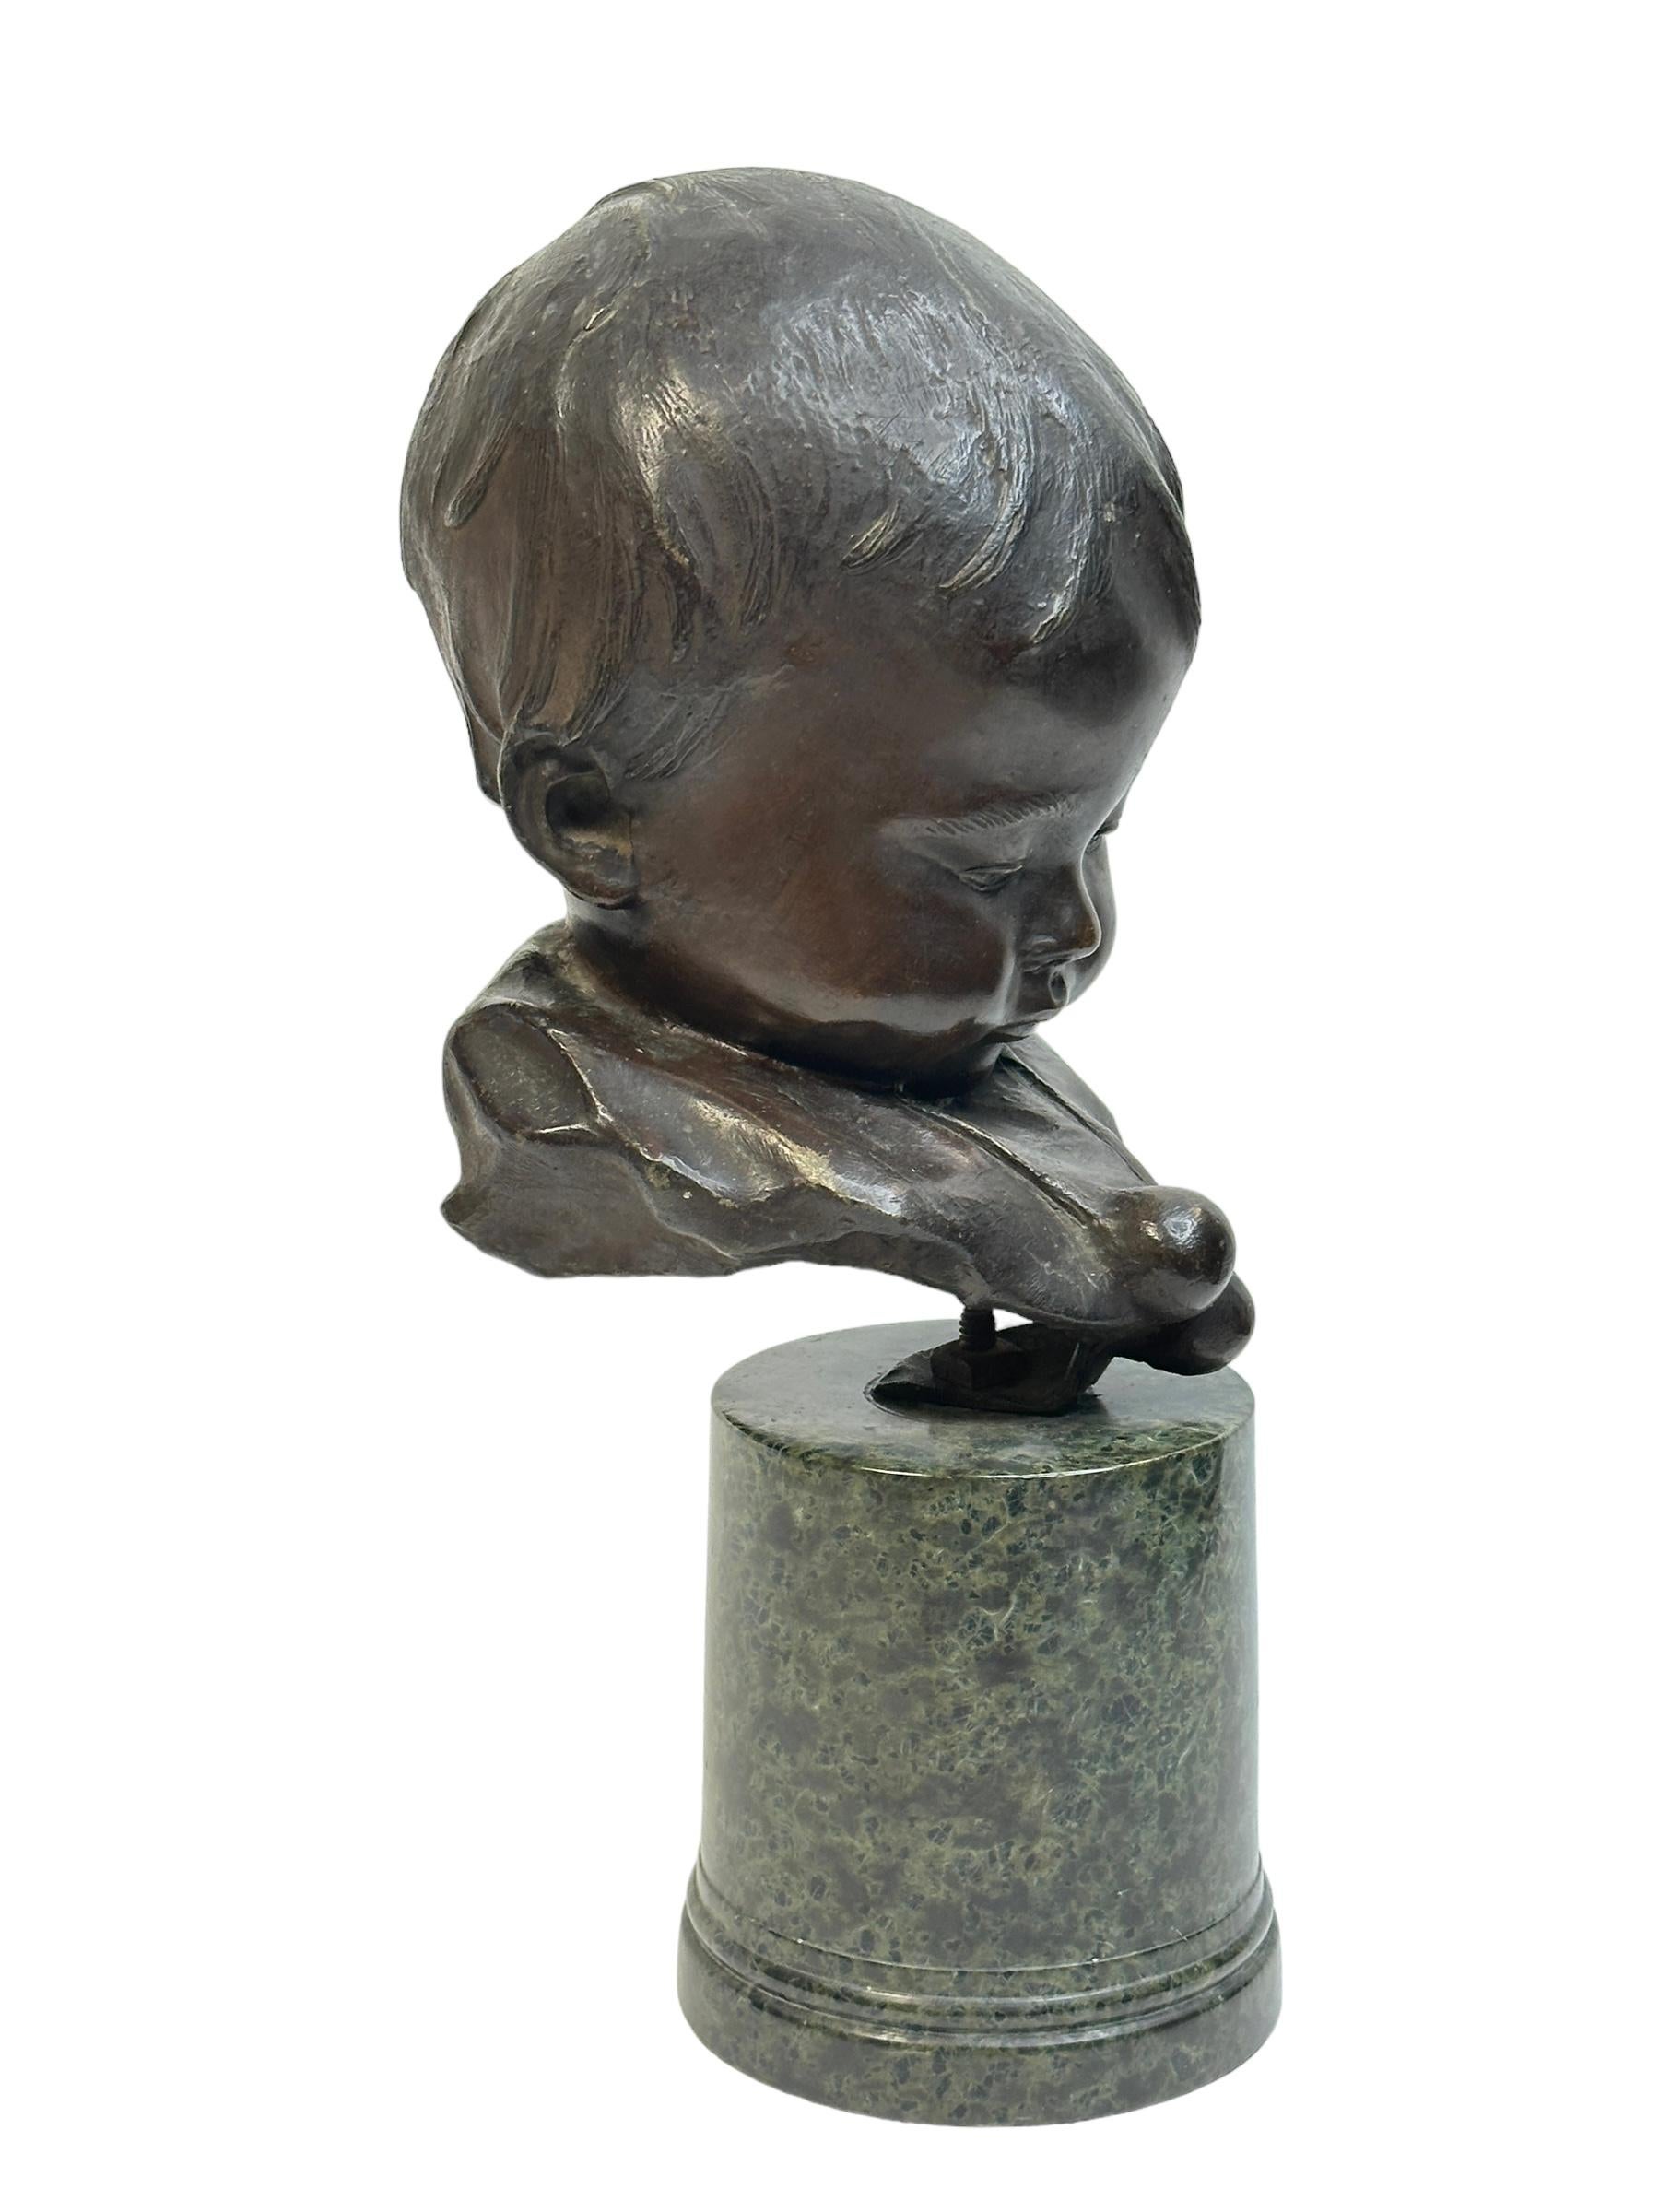 Statue classique en bronze très décorative de Bernardo Balestrieri représentant une tête de garçon. Le bronze 1884 et disparu en 1965 - Ce bronze est connu sous le nom de 